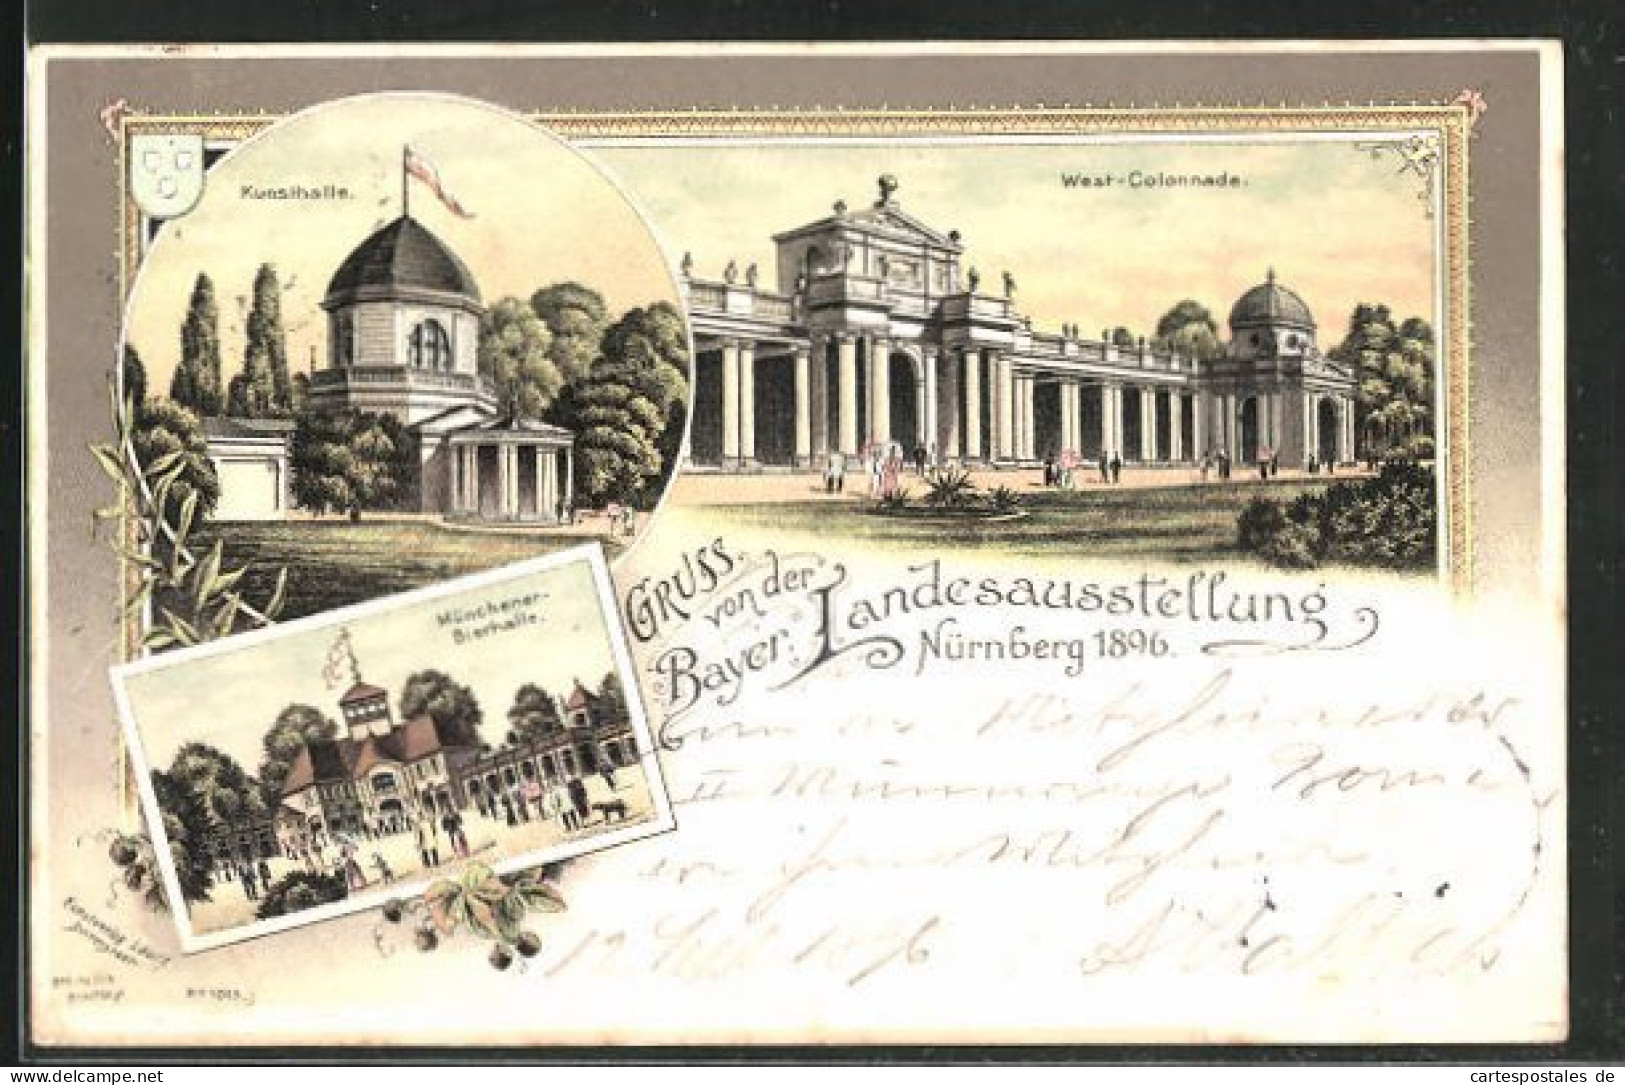 Lithographie Nürnberg, Bayr. Landesausstellung 1896, Münchner Bierhalle, Kunsthalle & Westcolonnade  - Expositions